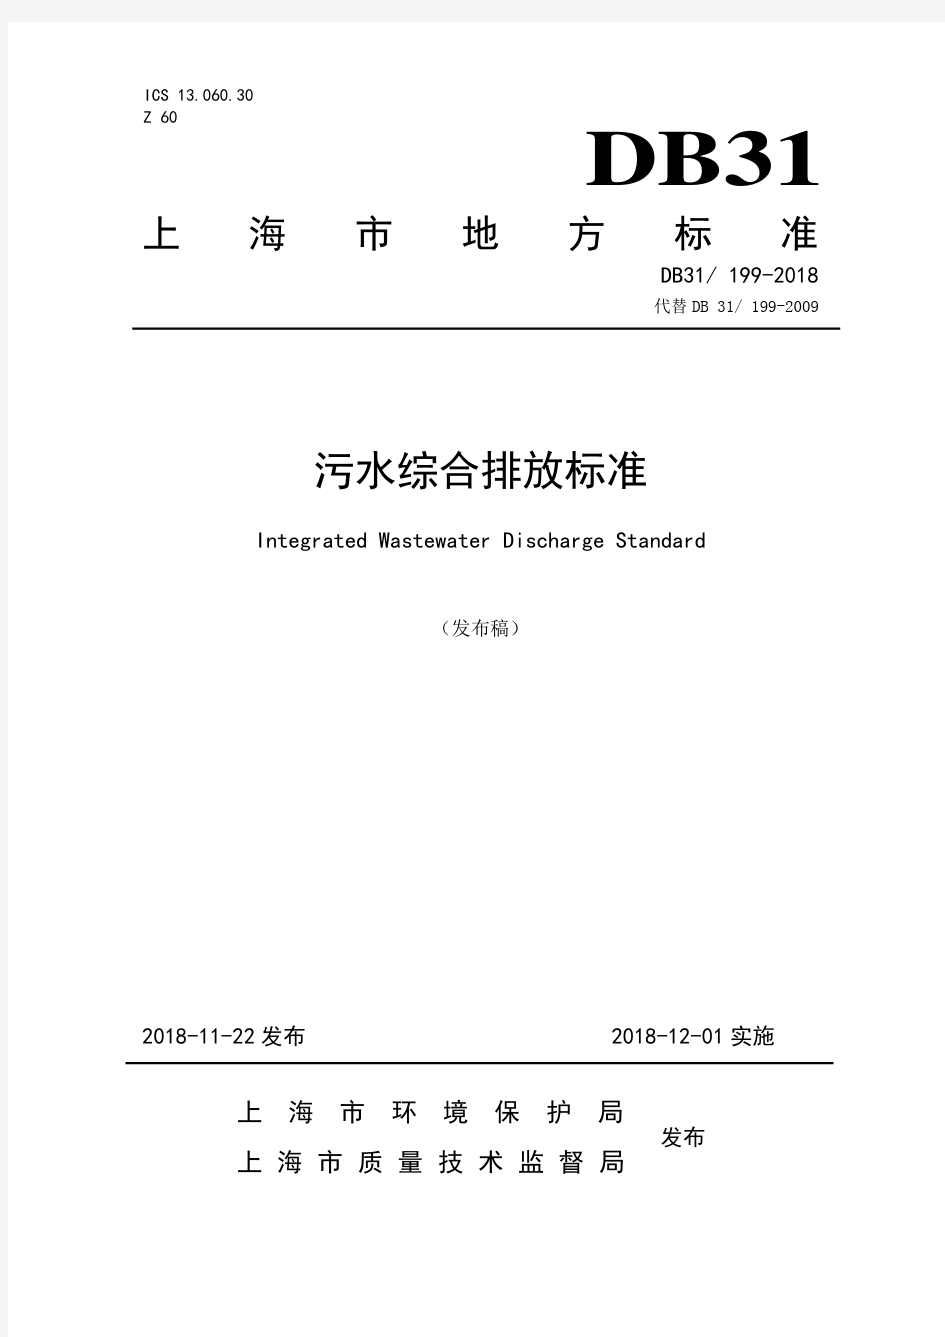 上海市地方污染物排放标准《污水综合排放标准》(DB31199-2018)